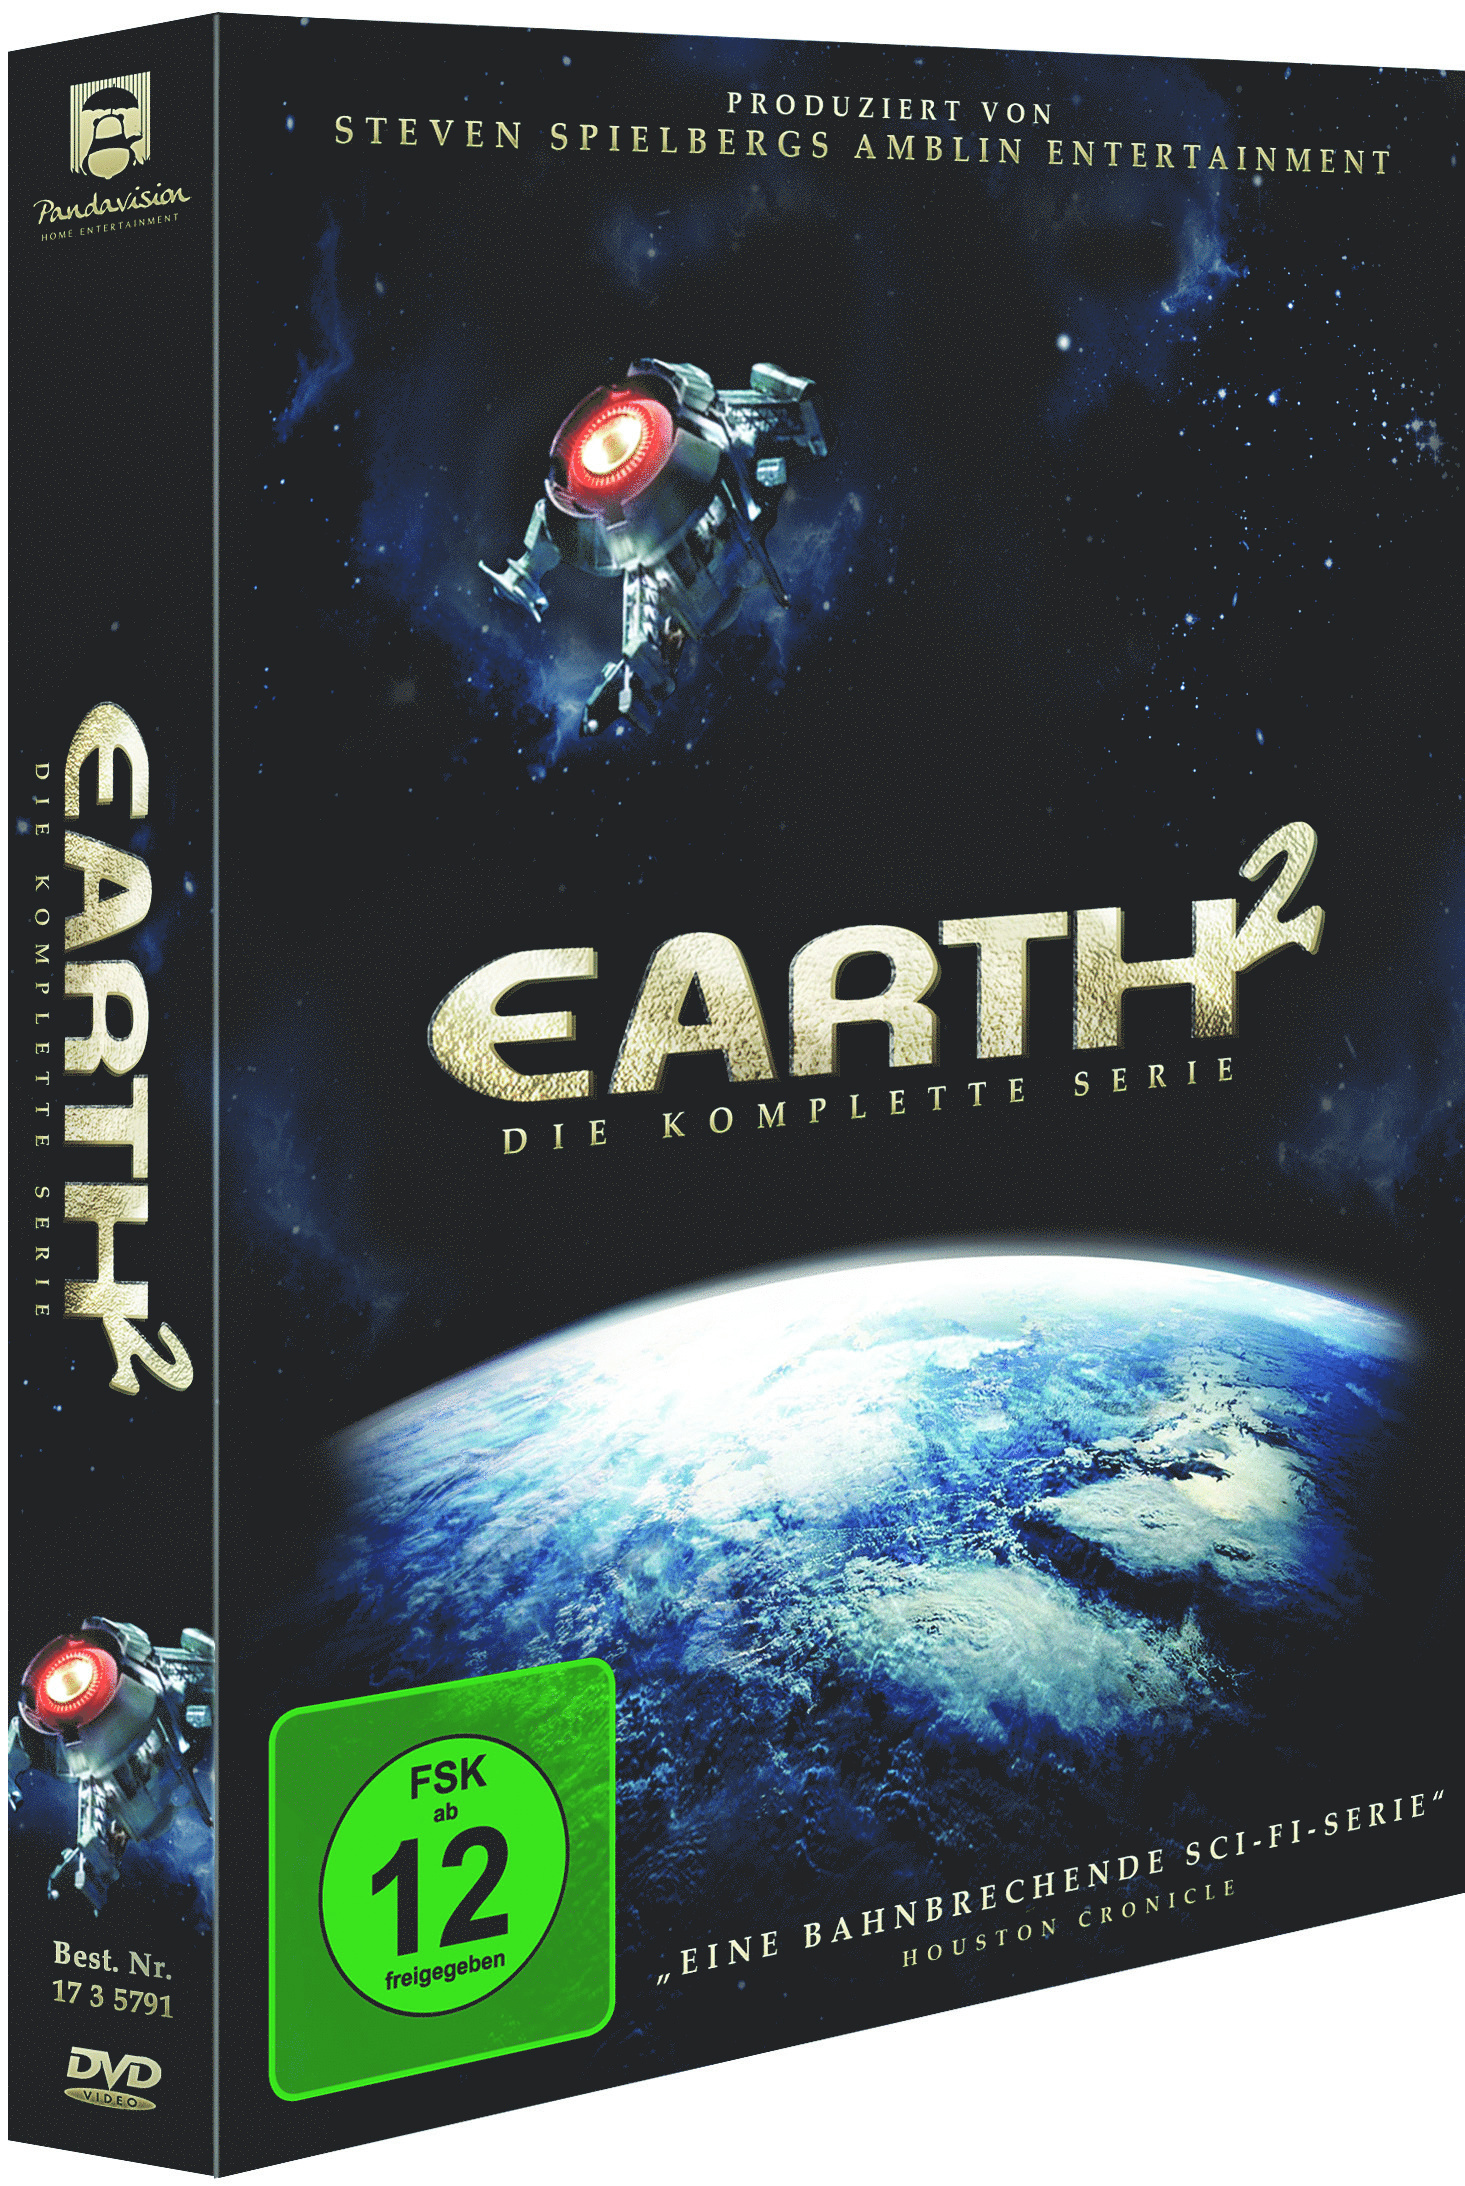 Image of Earth 2 - Die komplette Serie